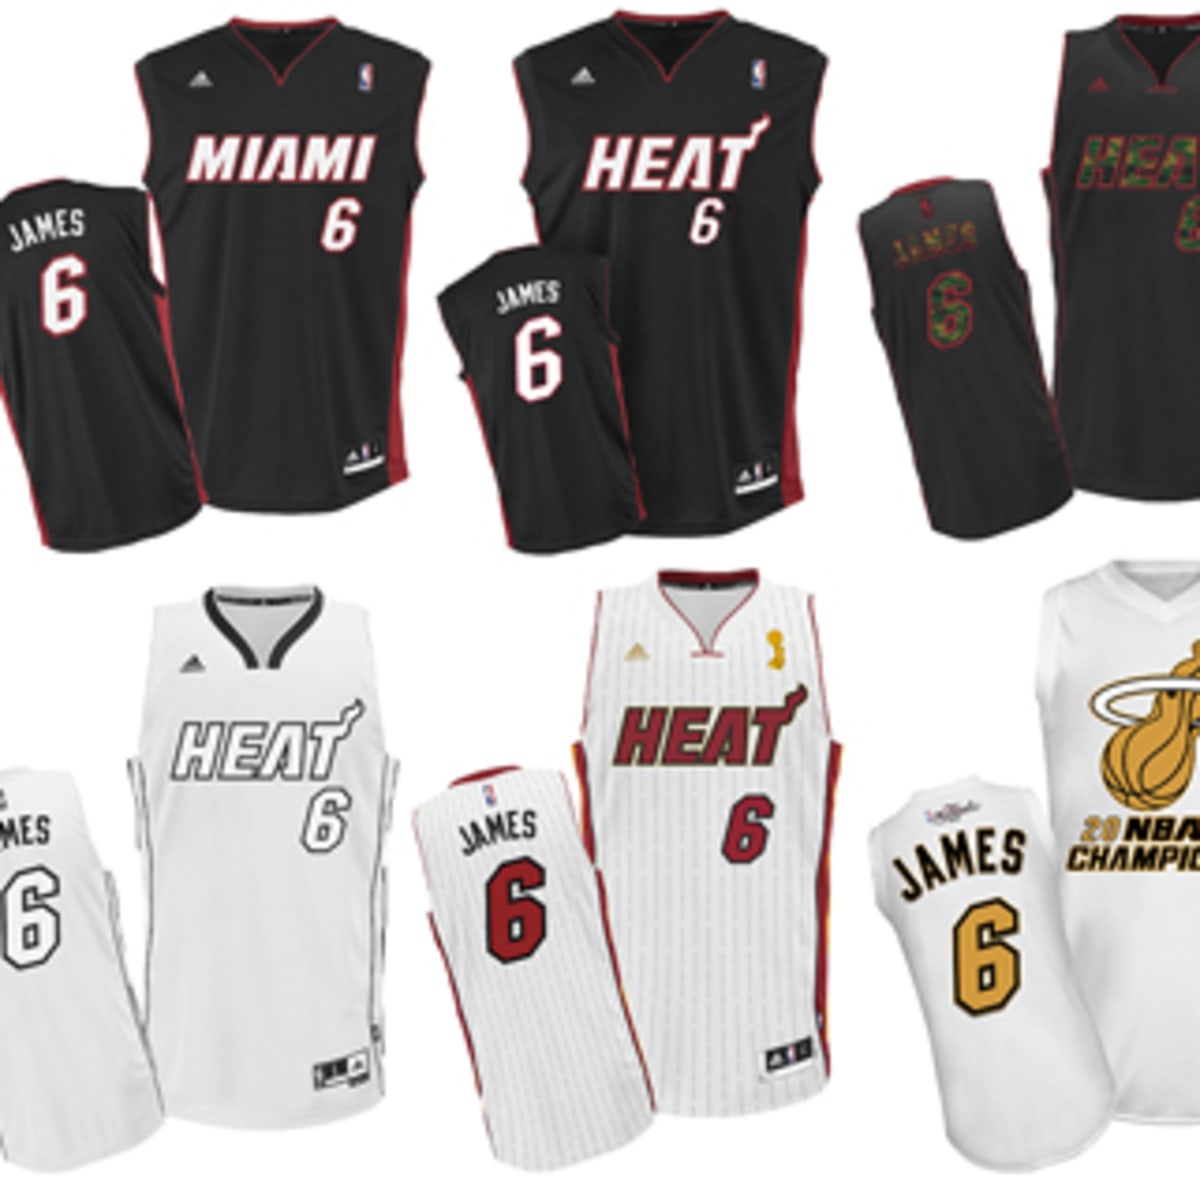 LeBron James NBA Fan Jerseys for sale